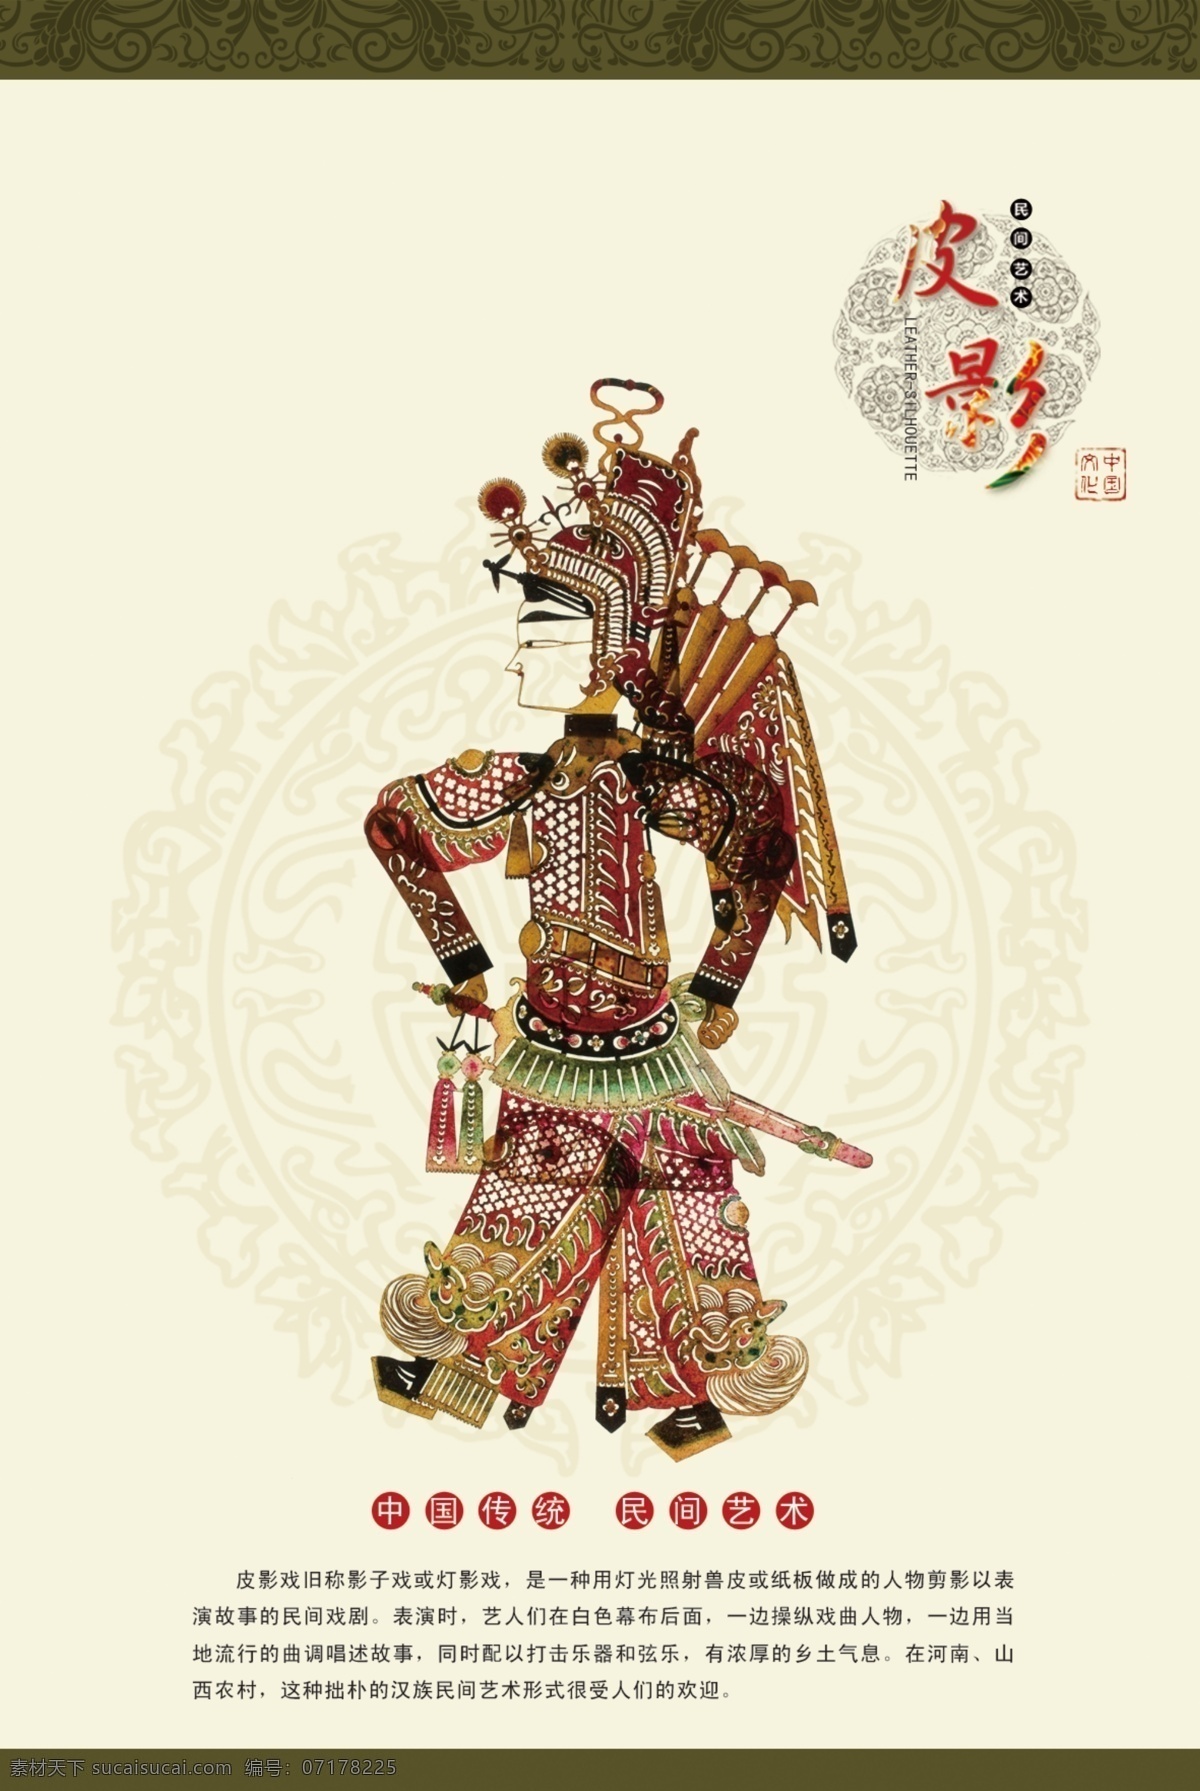 皮影免费下载 民间艺术 中国传统文化 皮影海报 灯影戏 psd源文件